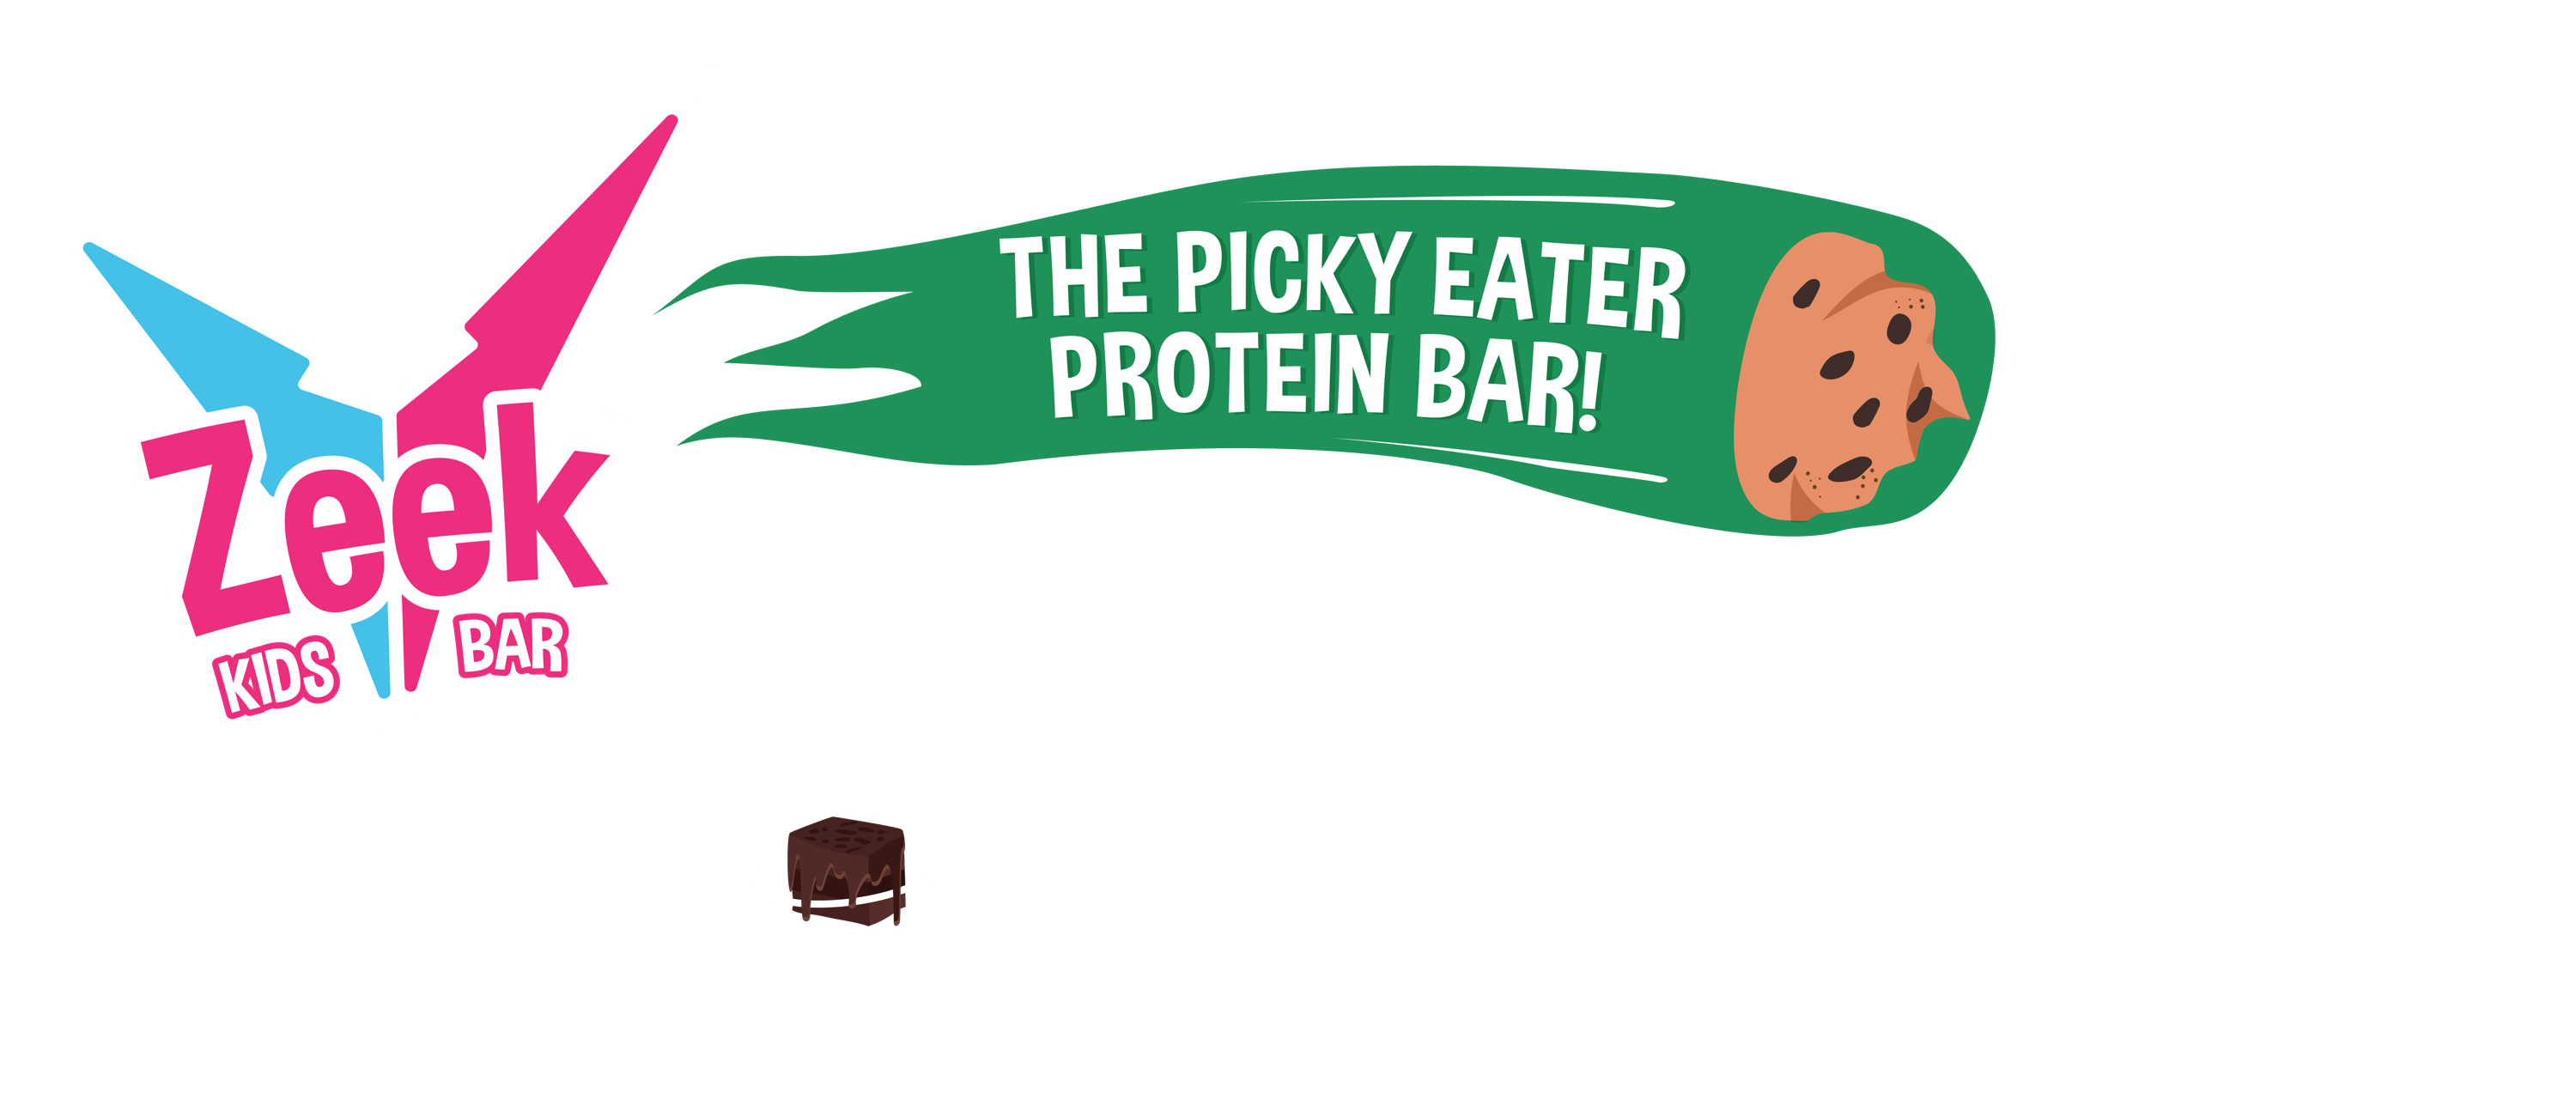 Zeek Kids Bar. The Picky Eater Protein Bar. 